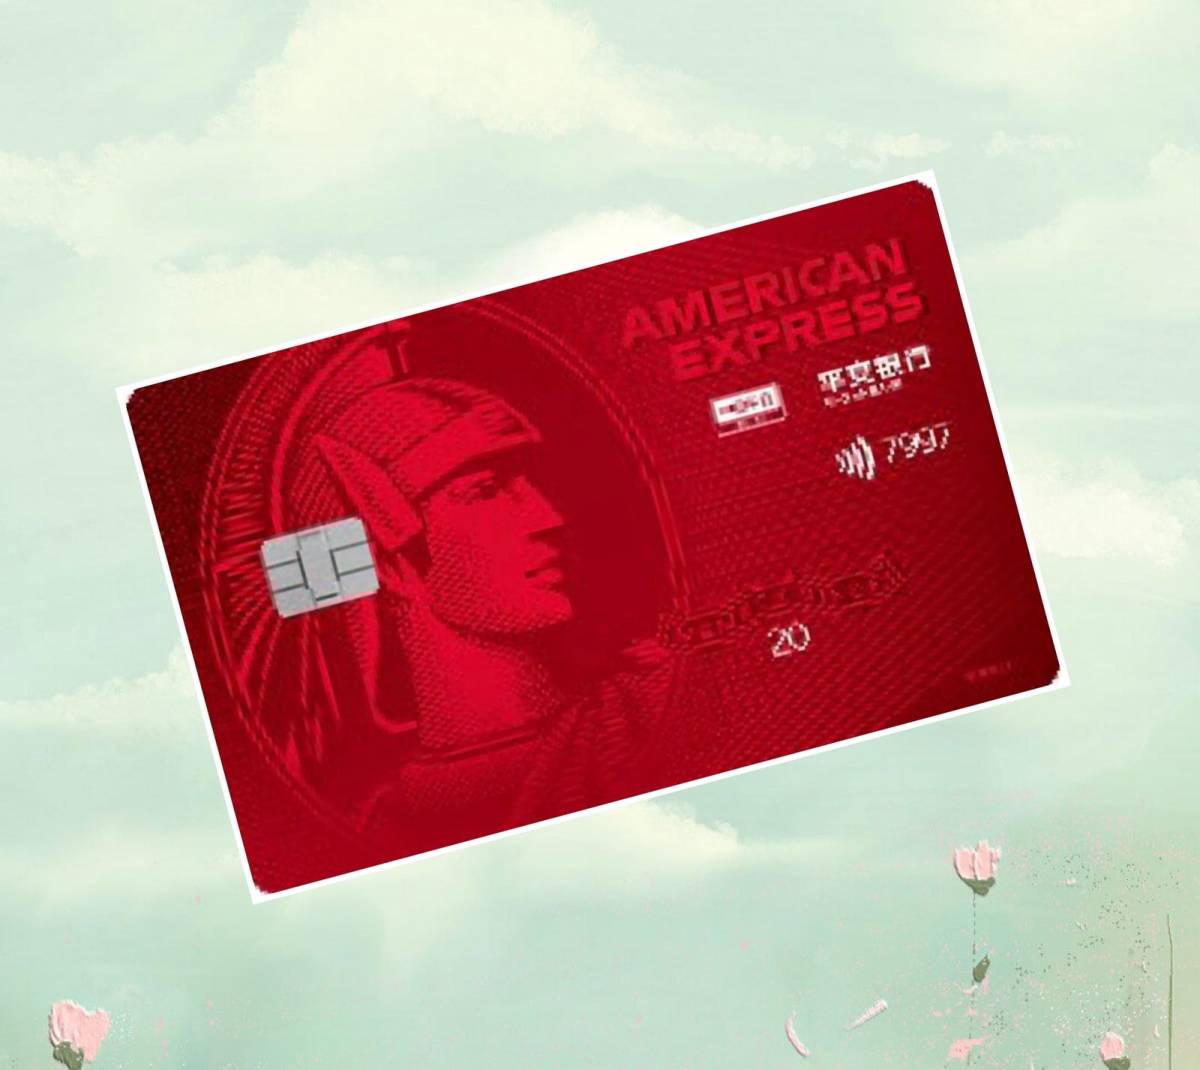 #美国运通卡我#平安银行美国运通耀红信用卡  ·故宫文化书签